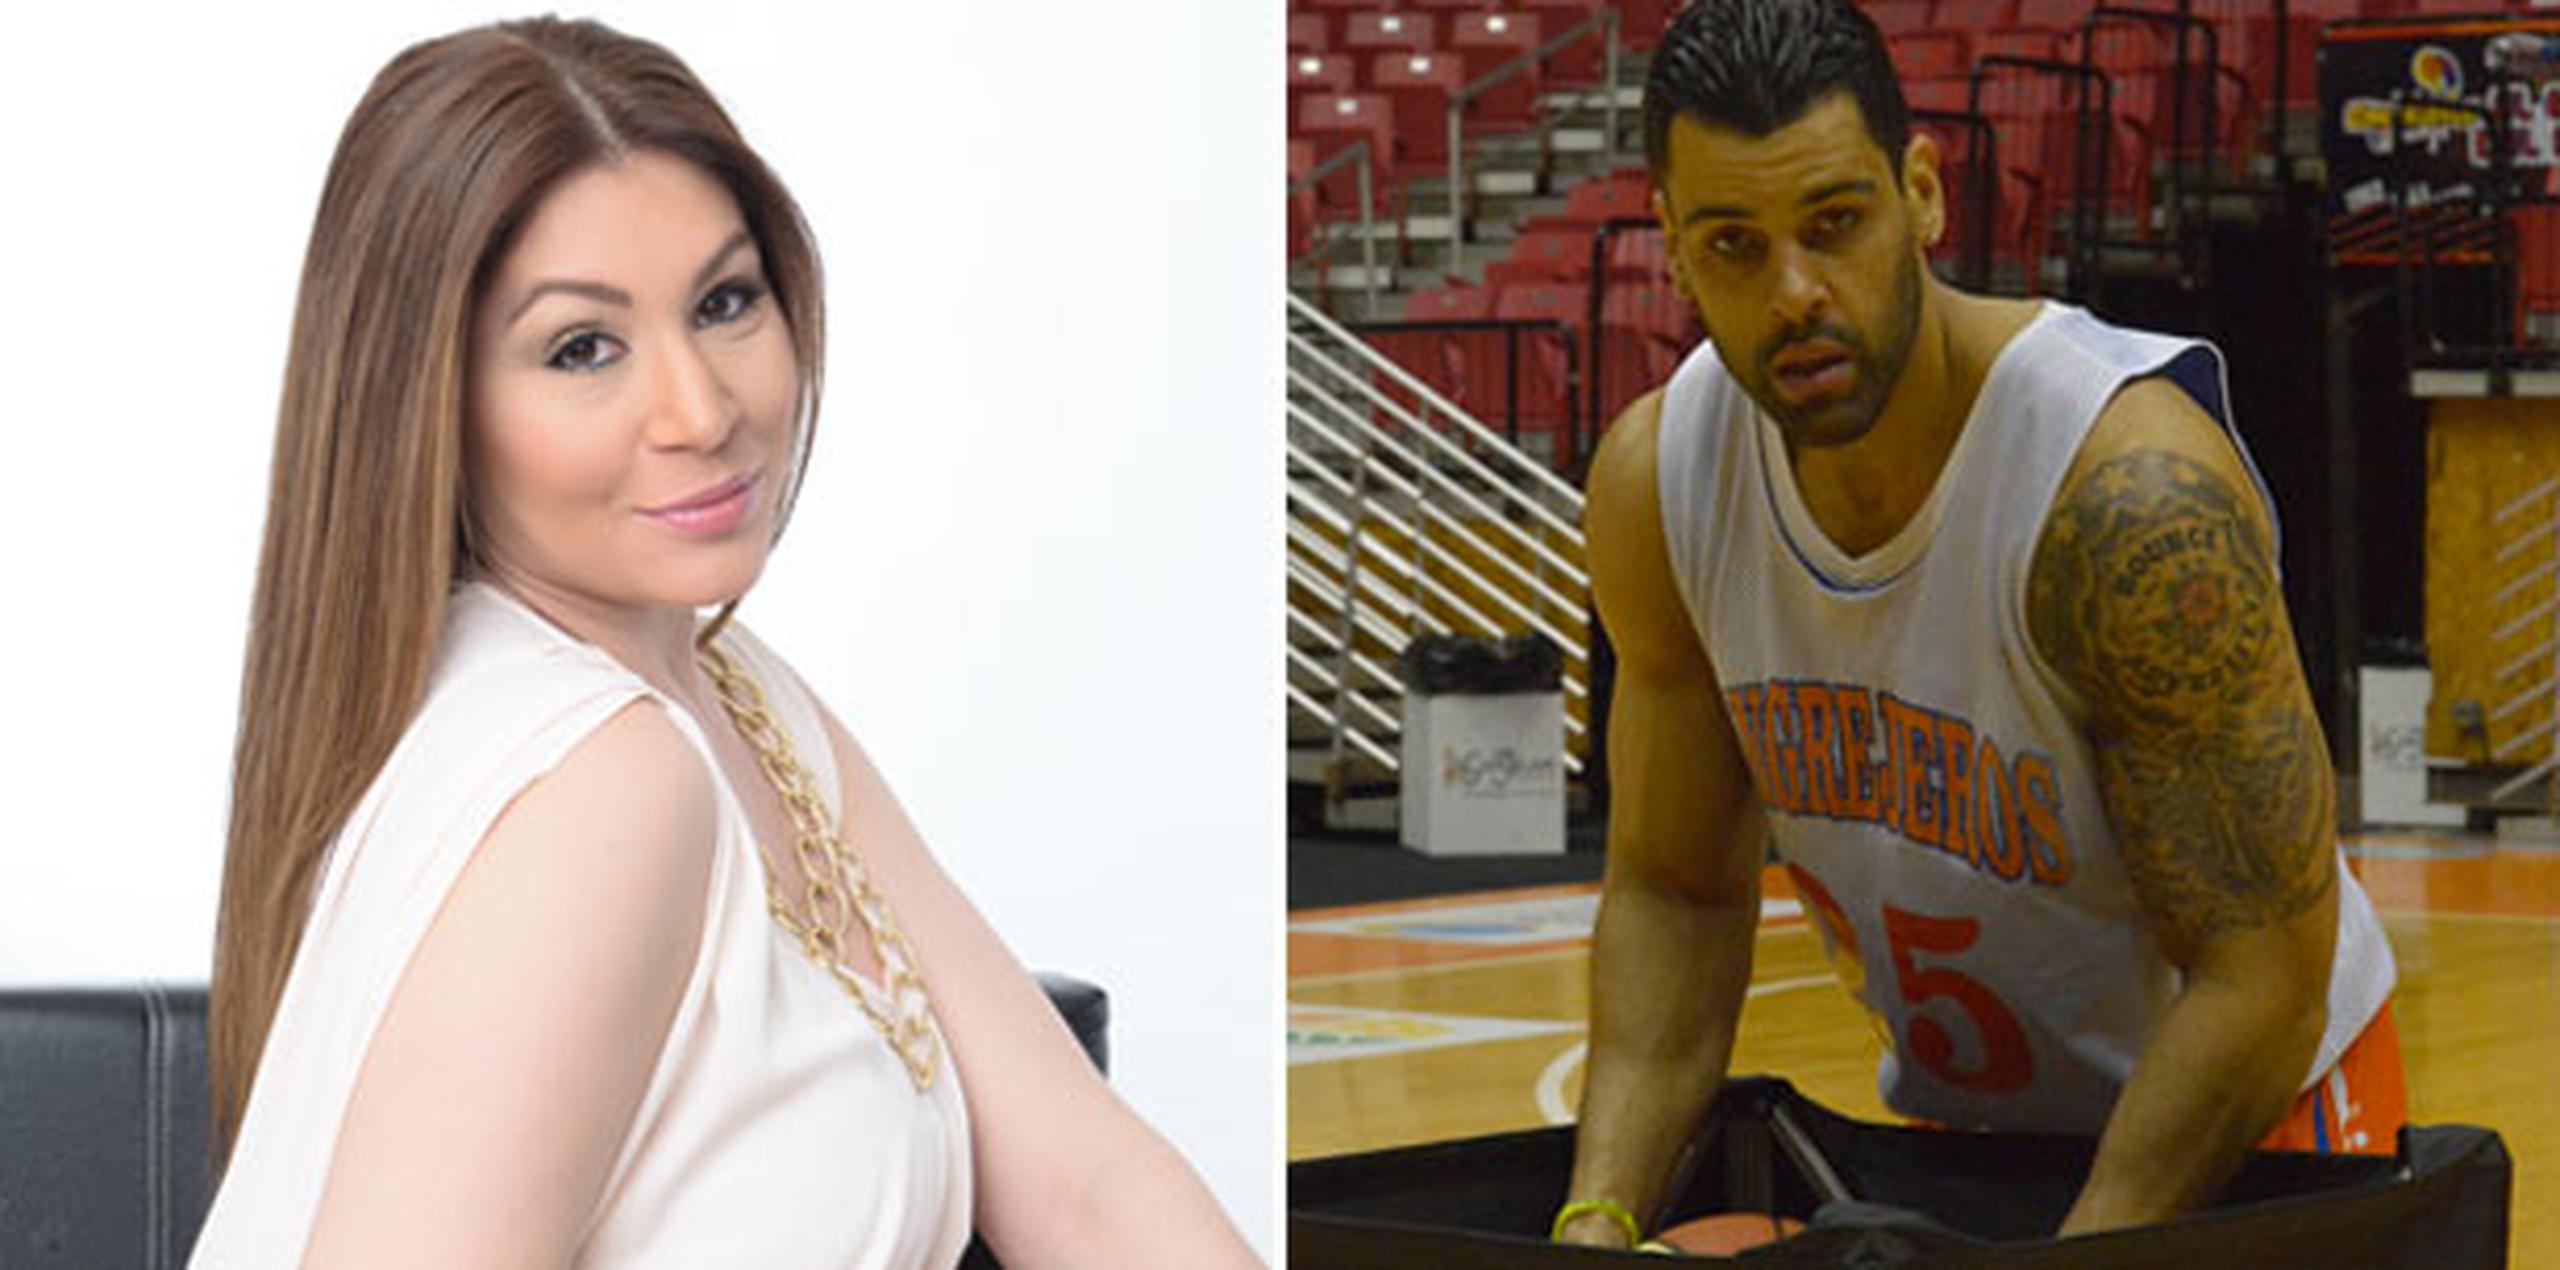 La actriz y presentadora Daniela Droz y el baloncelista Christian Dalmau ofrecerán una entrevista en el programa del que ella es coanfitriona, “Rubén & Co.”, de Univision Puerto Rico. (Archivo)